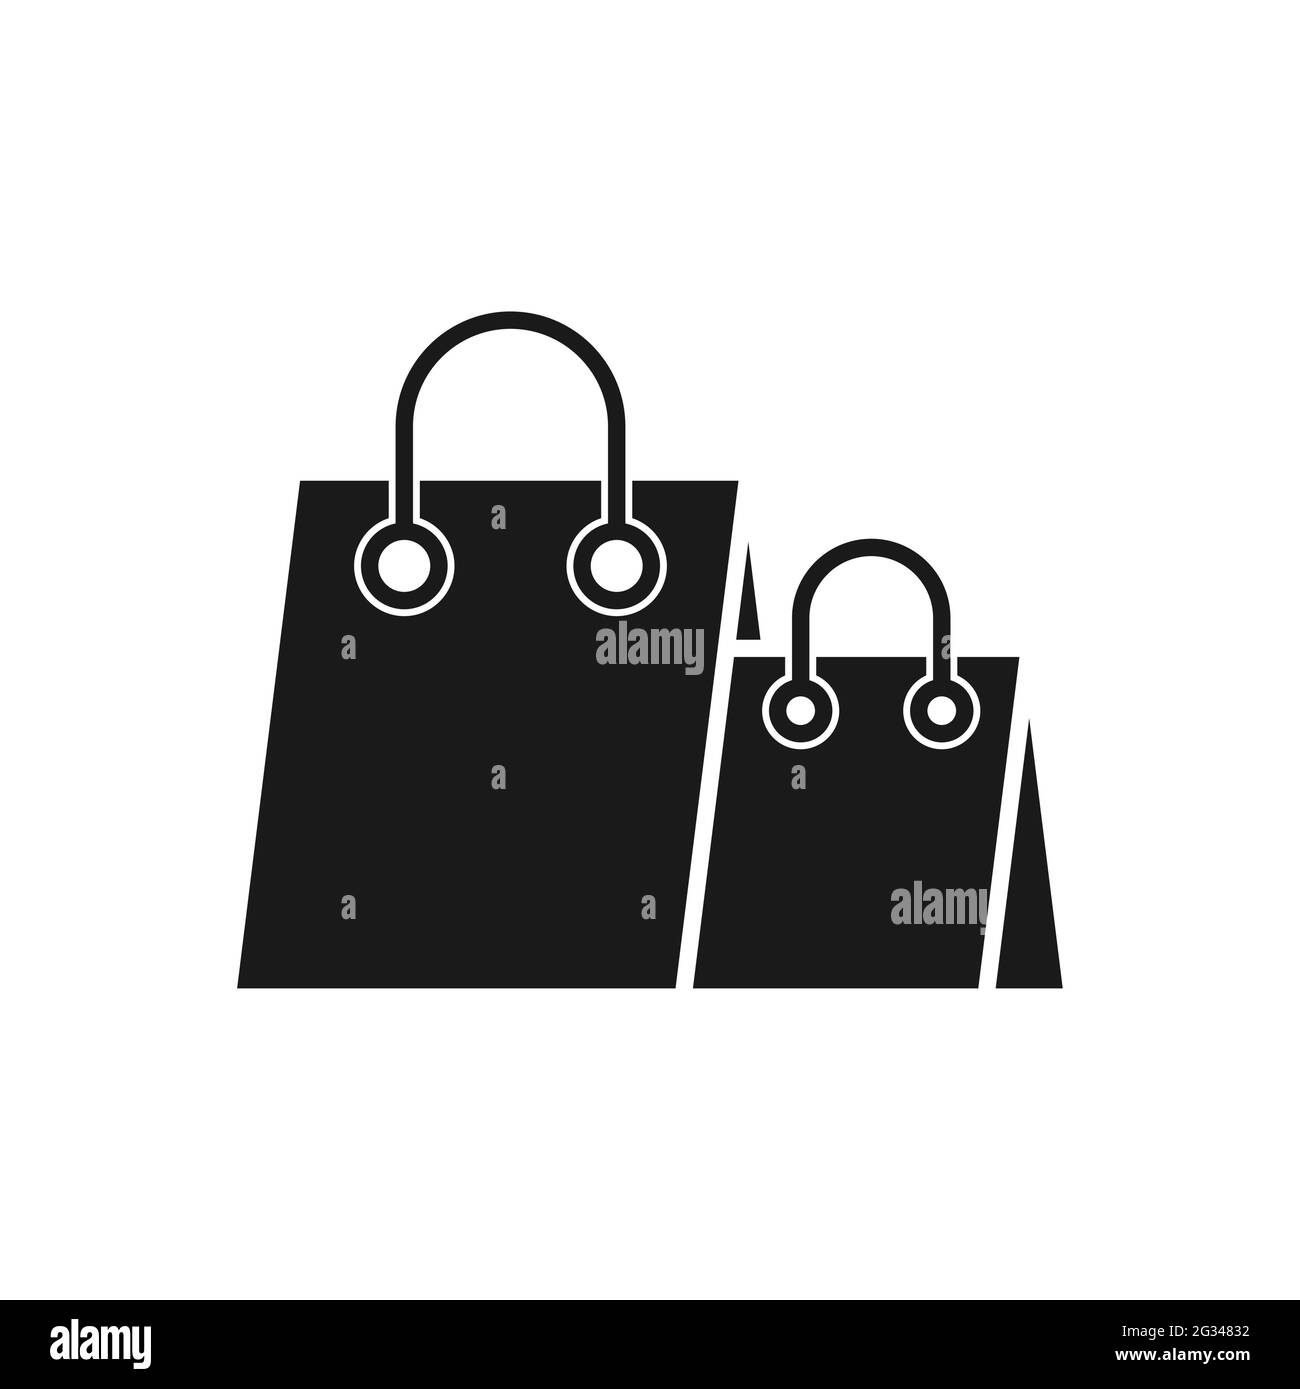 Icona della borsa per la spesa - Illustrazione vettoriale. Shopping Bag  icona vettoriale per e-commerce, negozio online e mercato. Vettore di icona  della shopping bag per i Web Immagine e Vettoriale -